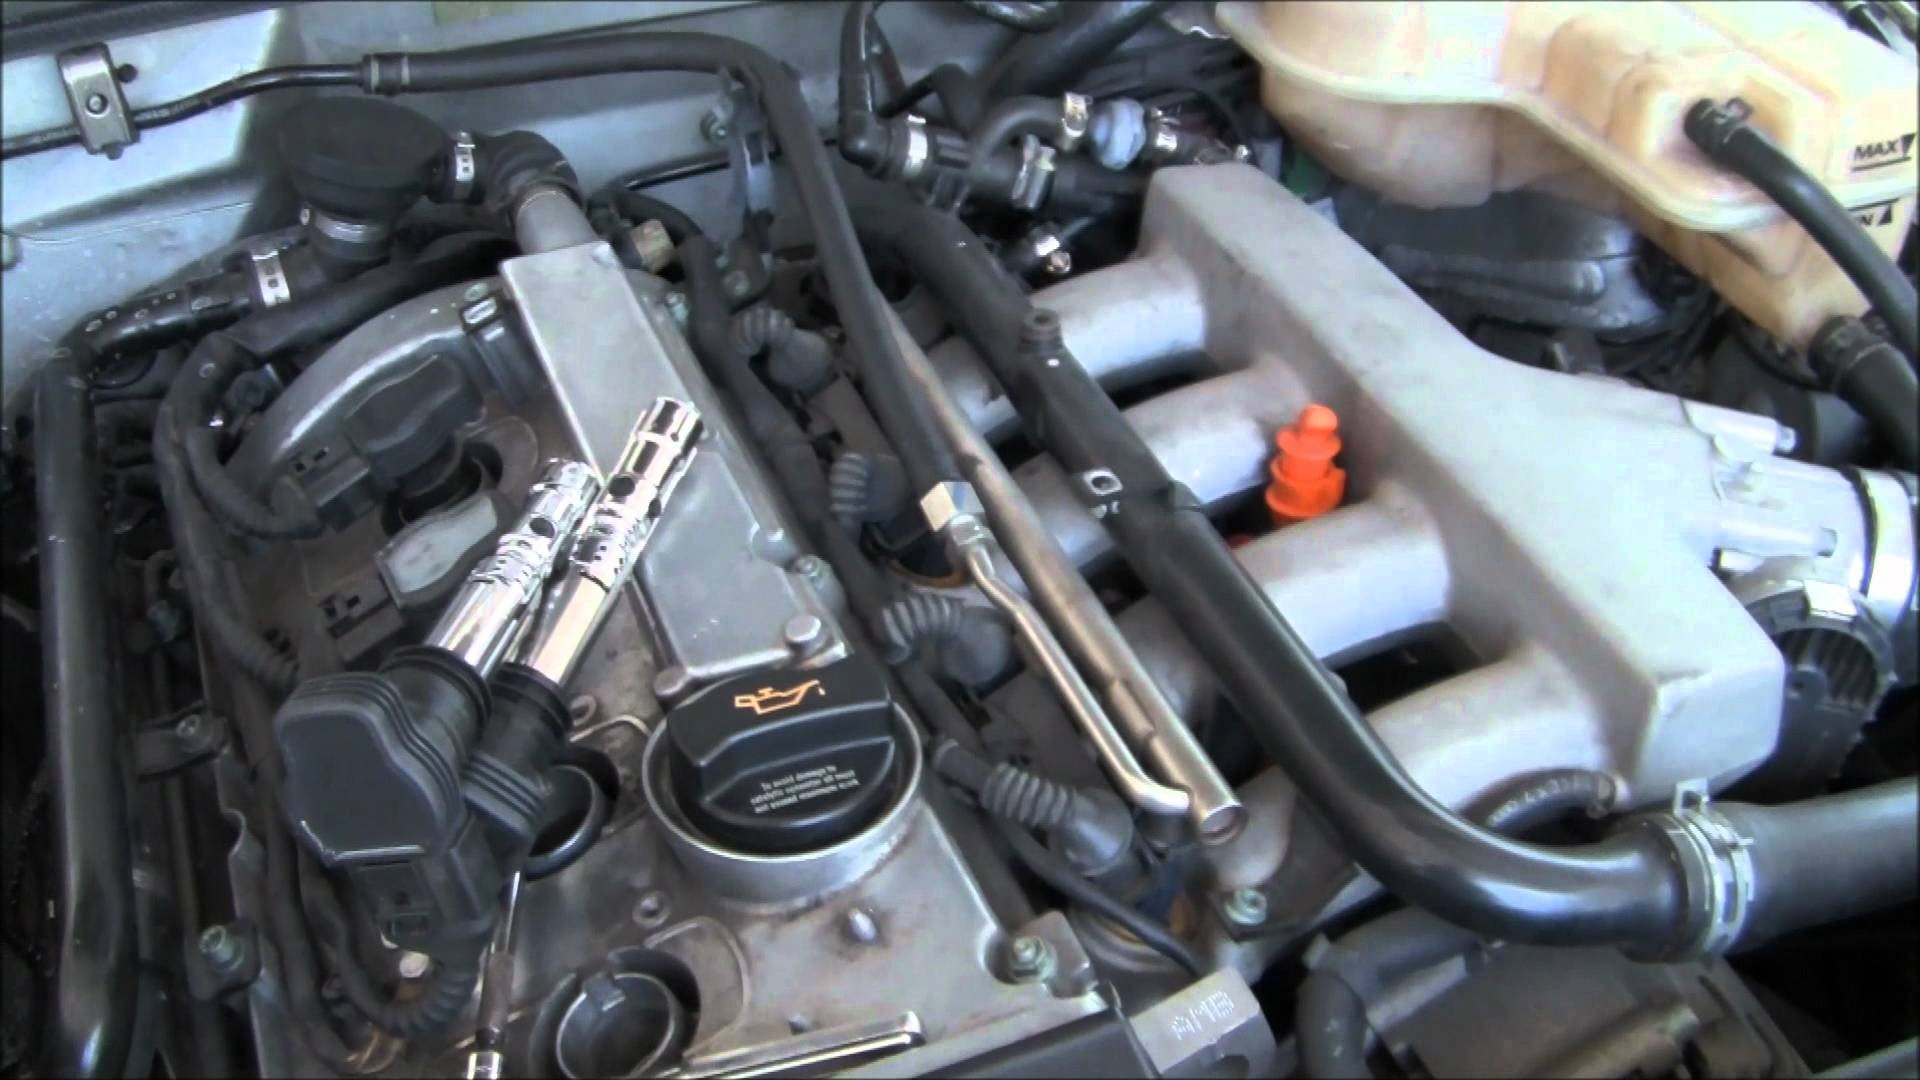 2001 Vw Jetta 1 8 T Engine Diagram 2004 Audi A4 Coolant Flange Replacement Part 1 Of 2001 Vw Jetta 1 8 T Engine Diagram